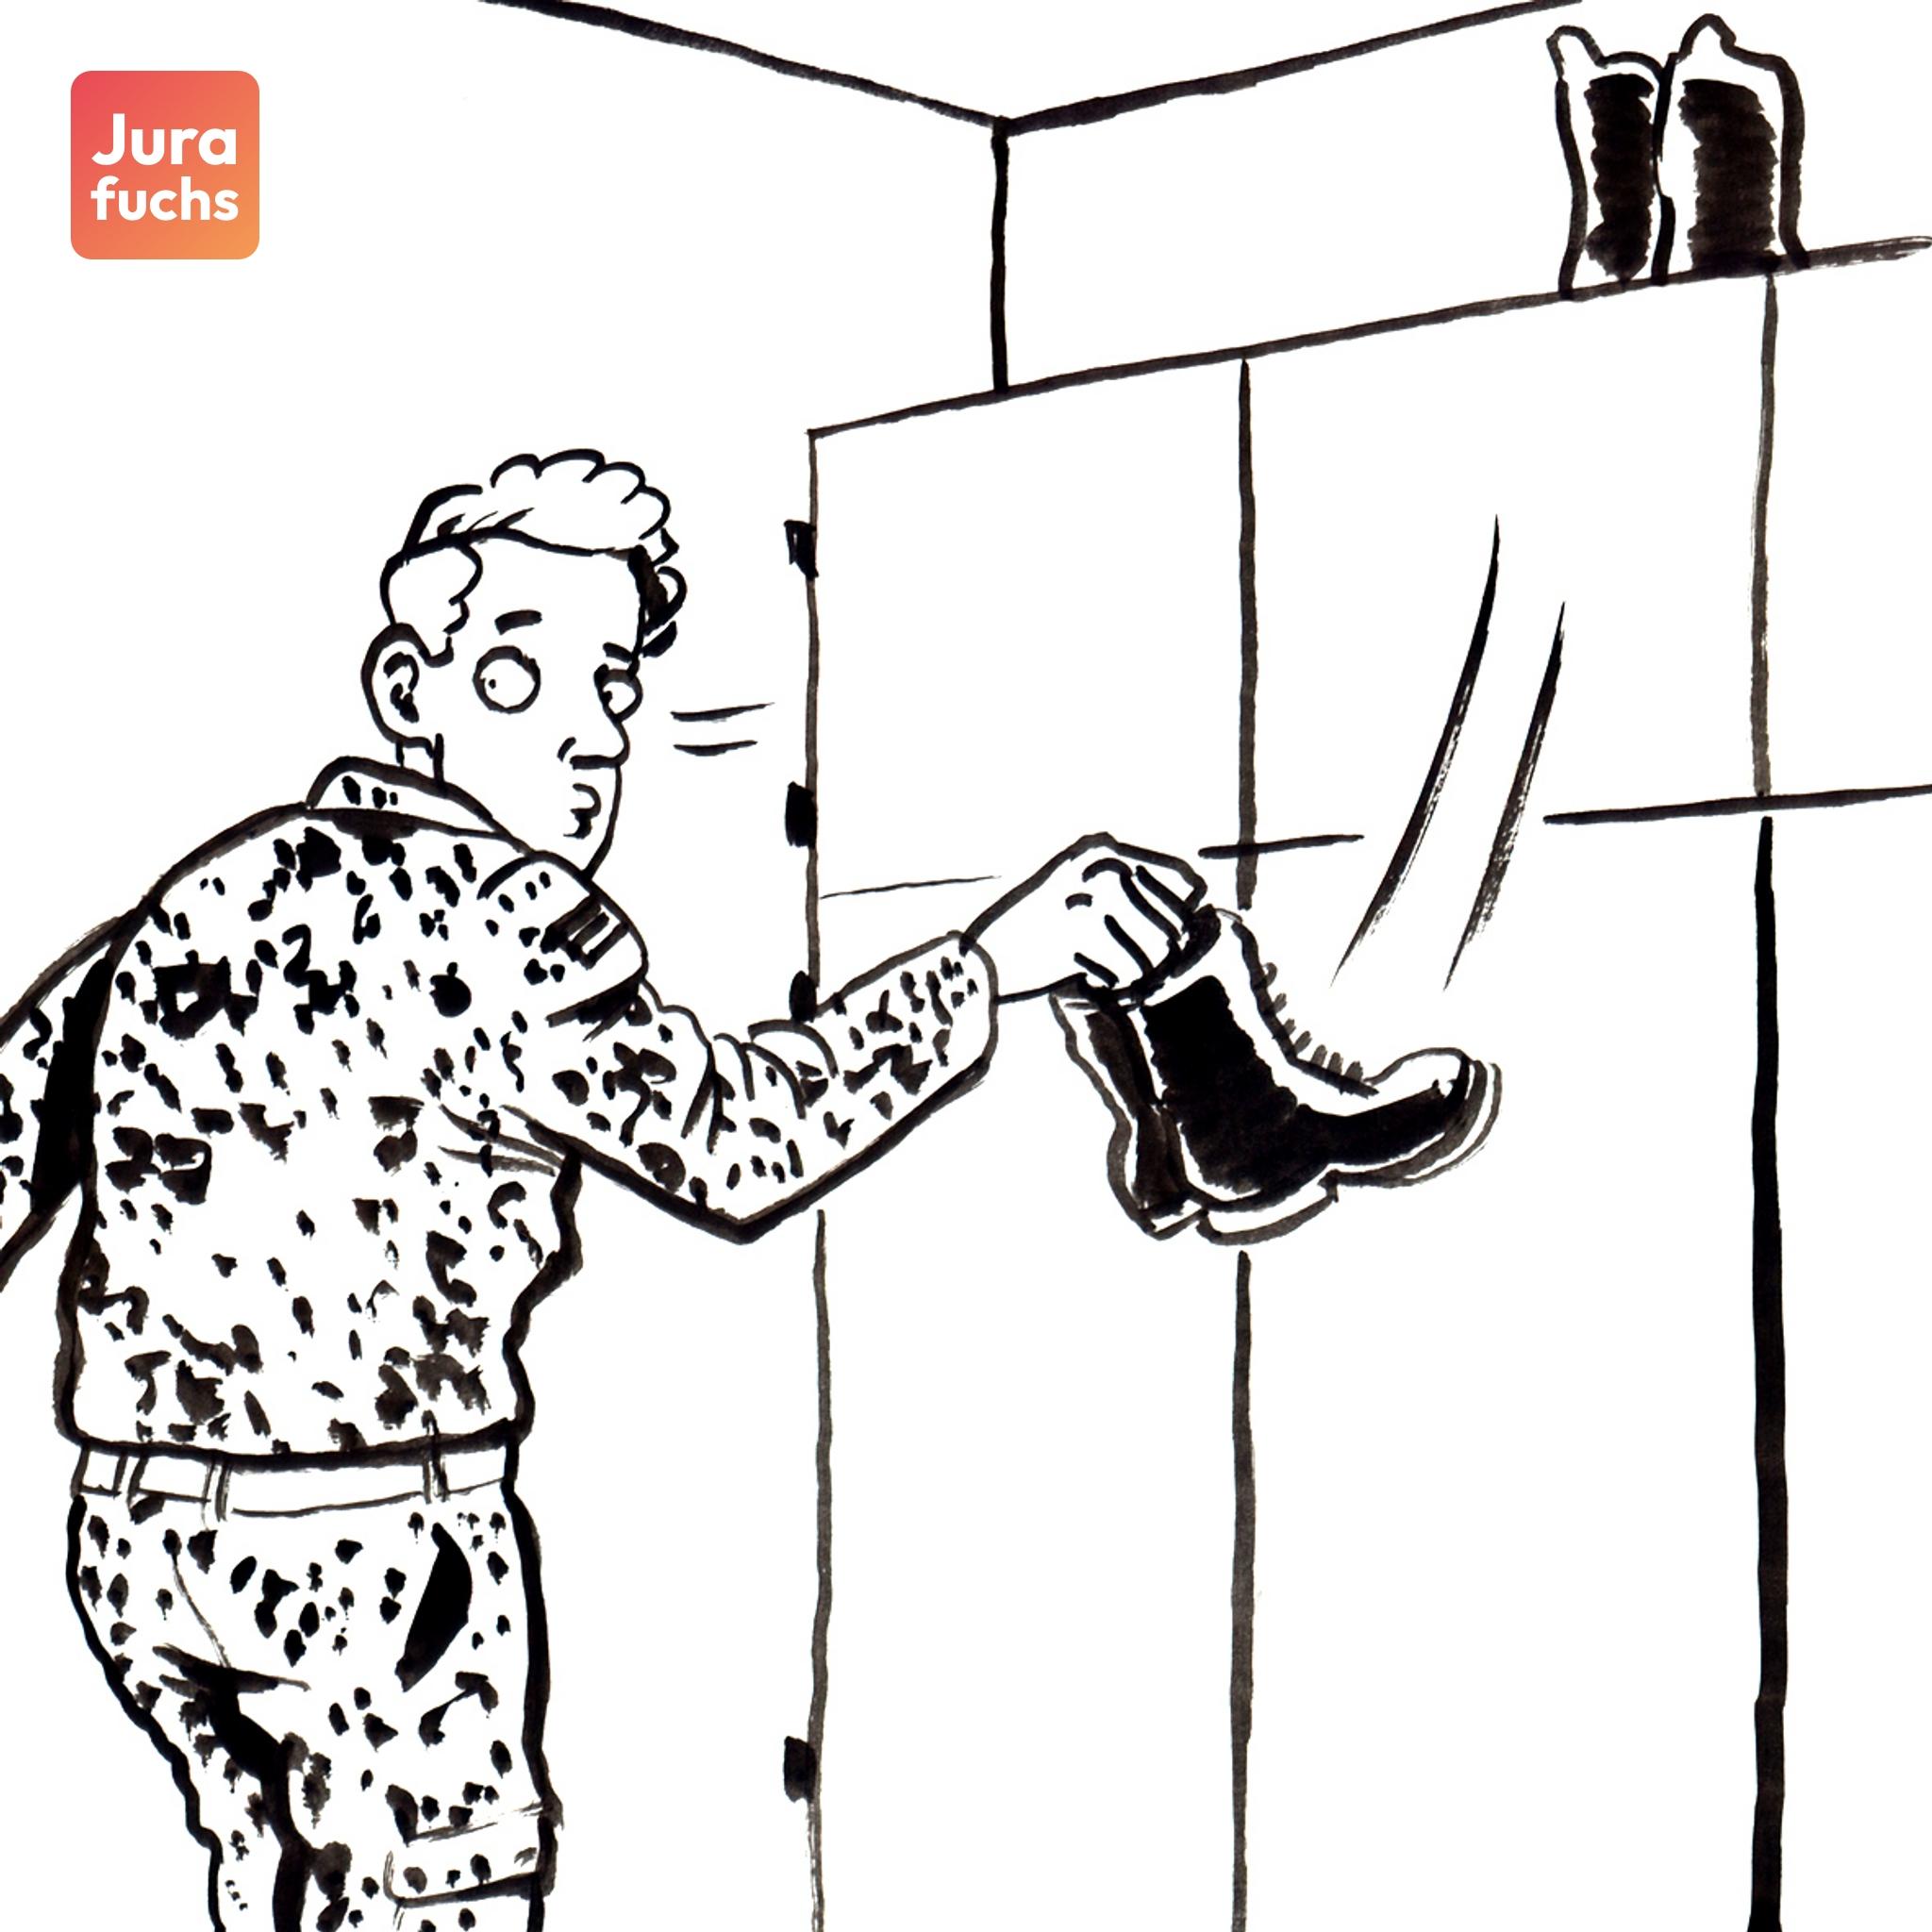 Jurafuchs Illustration: Soldat S tauscht heimlich seine Stiefel gegen andere aus. 